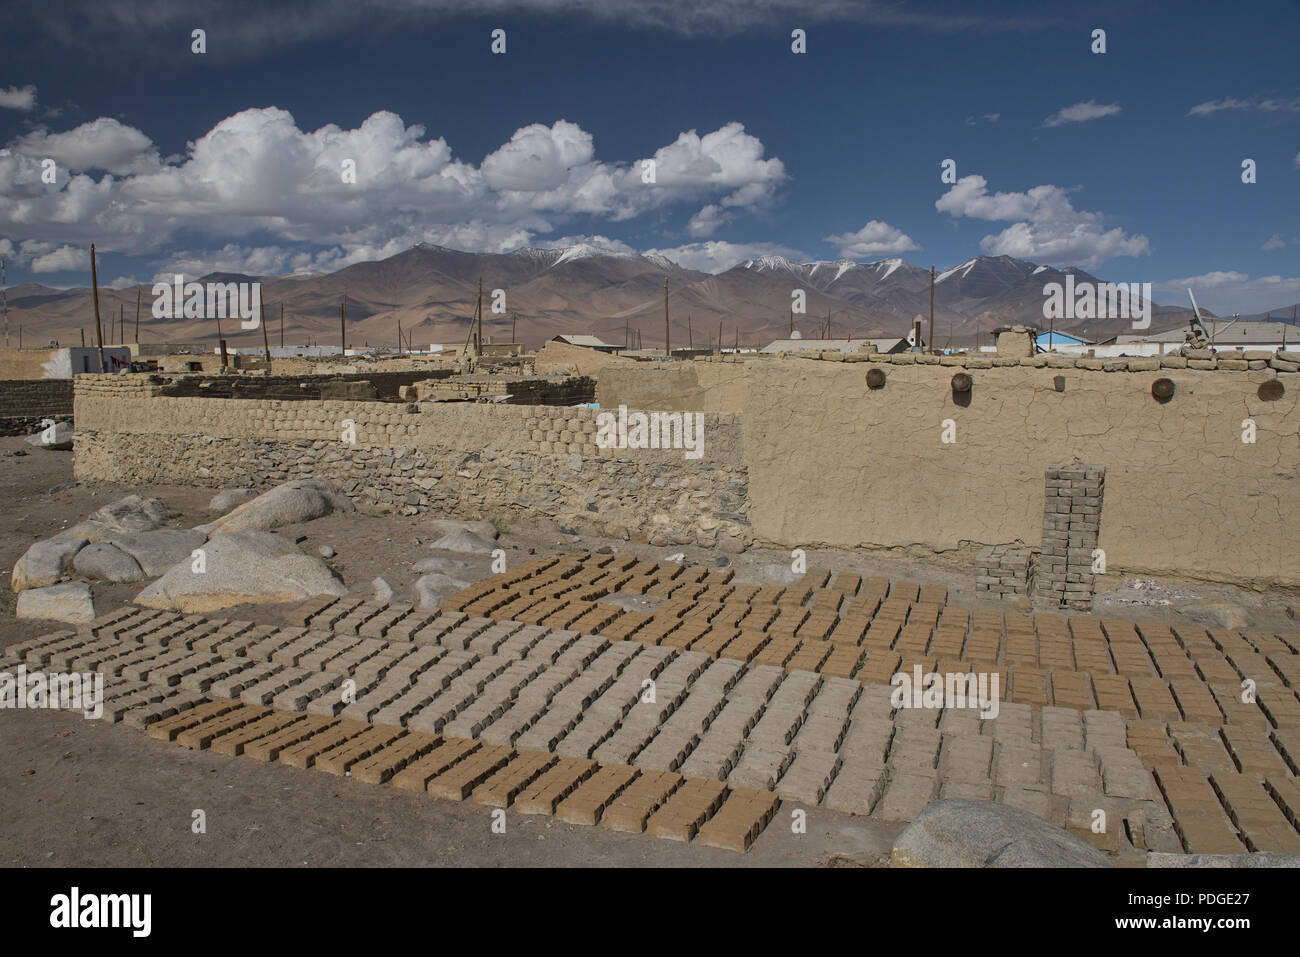 El secado de ladrillos de barro para viviendas de adobe en la aldea de Karakul, Tayikistán Foto de stock